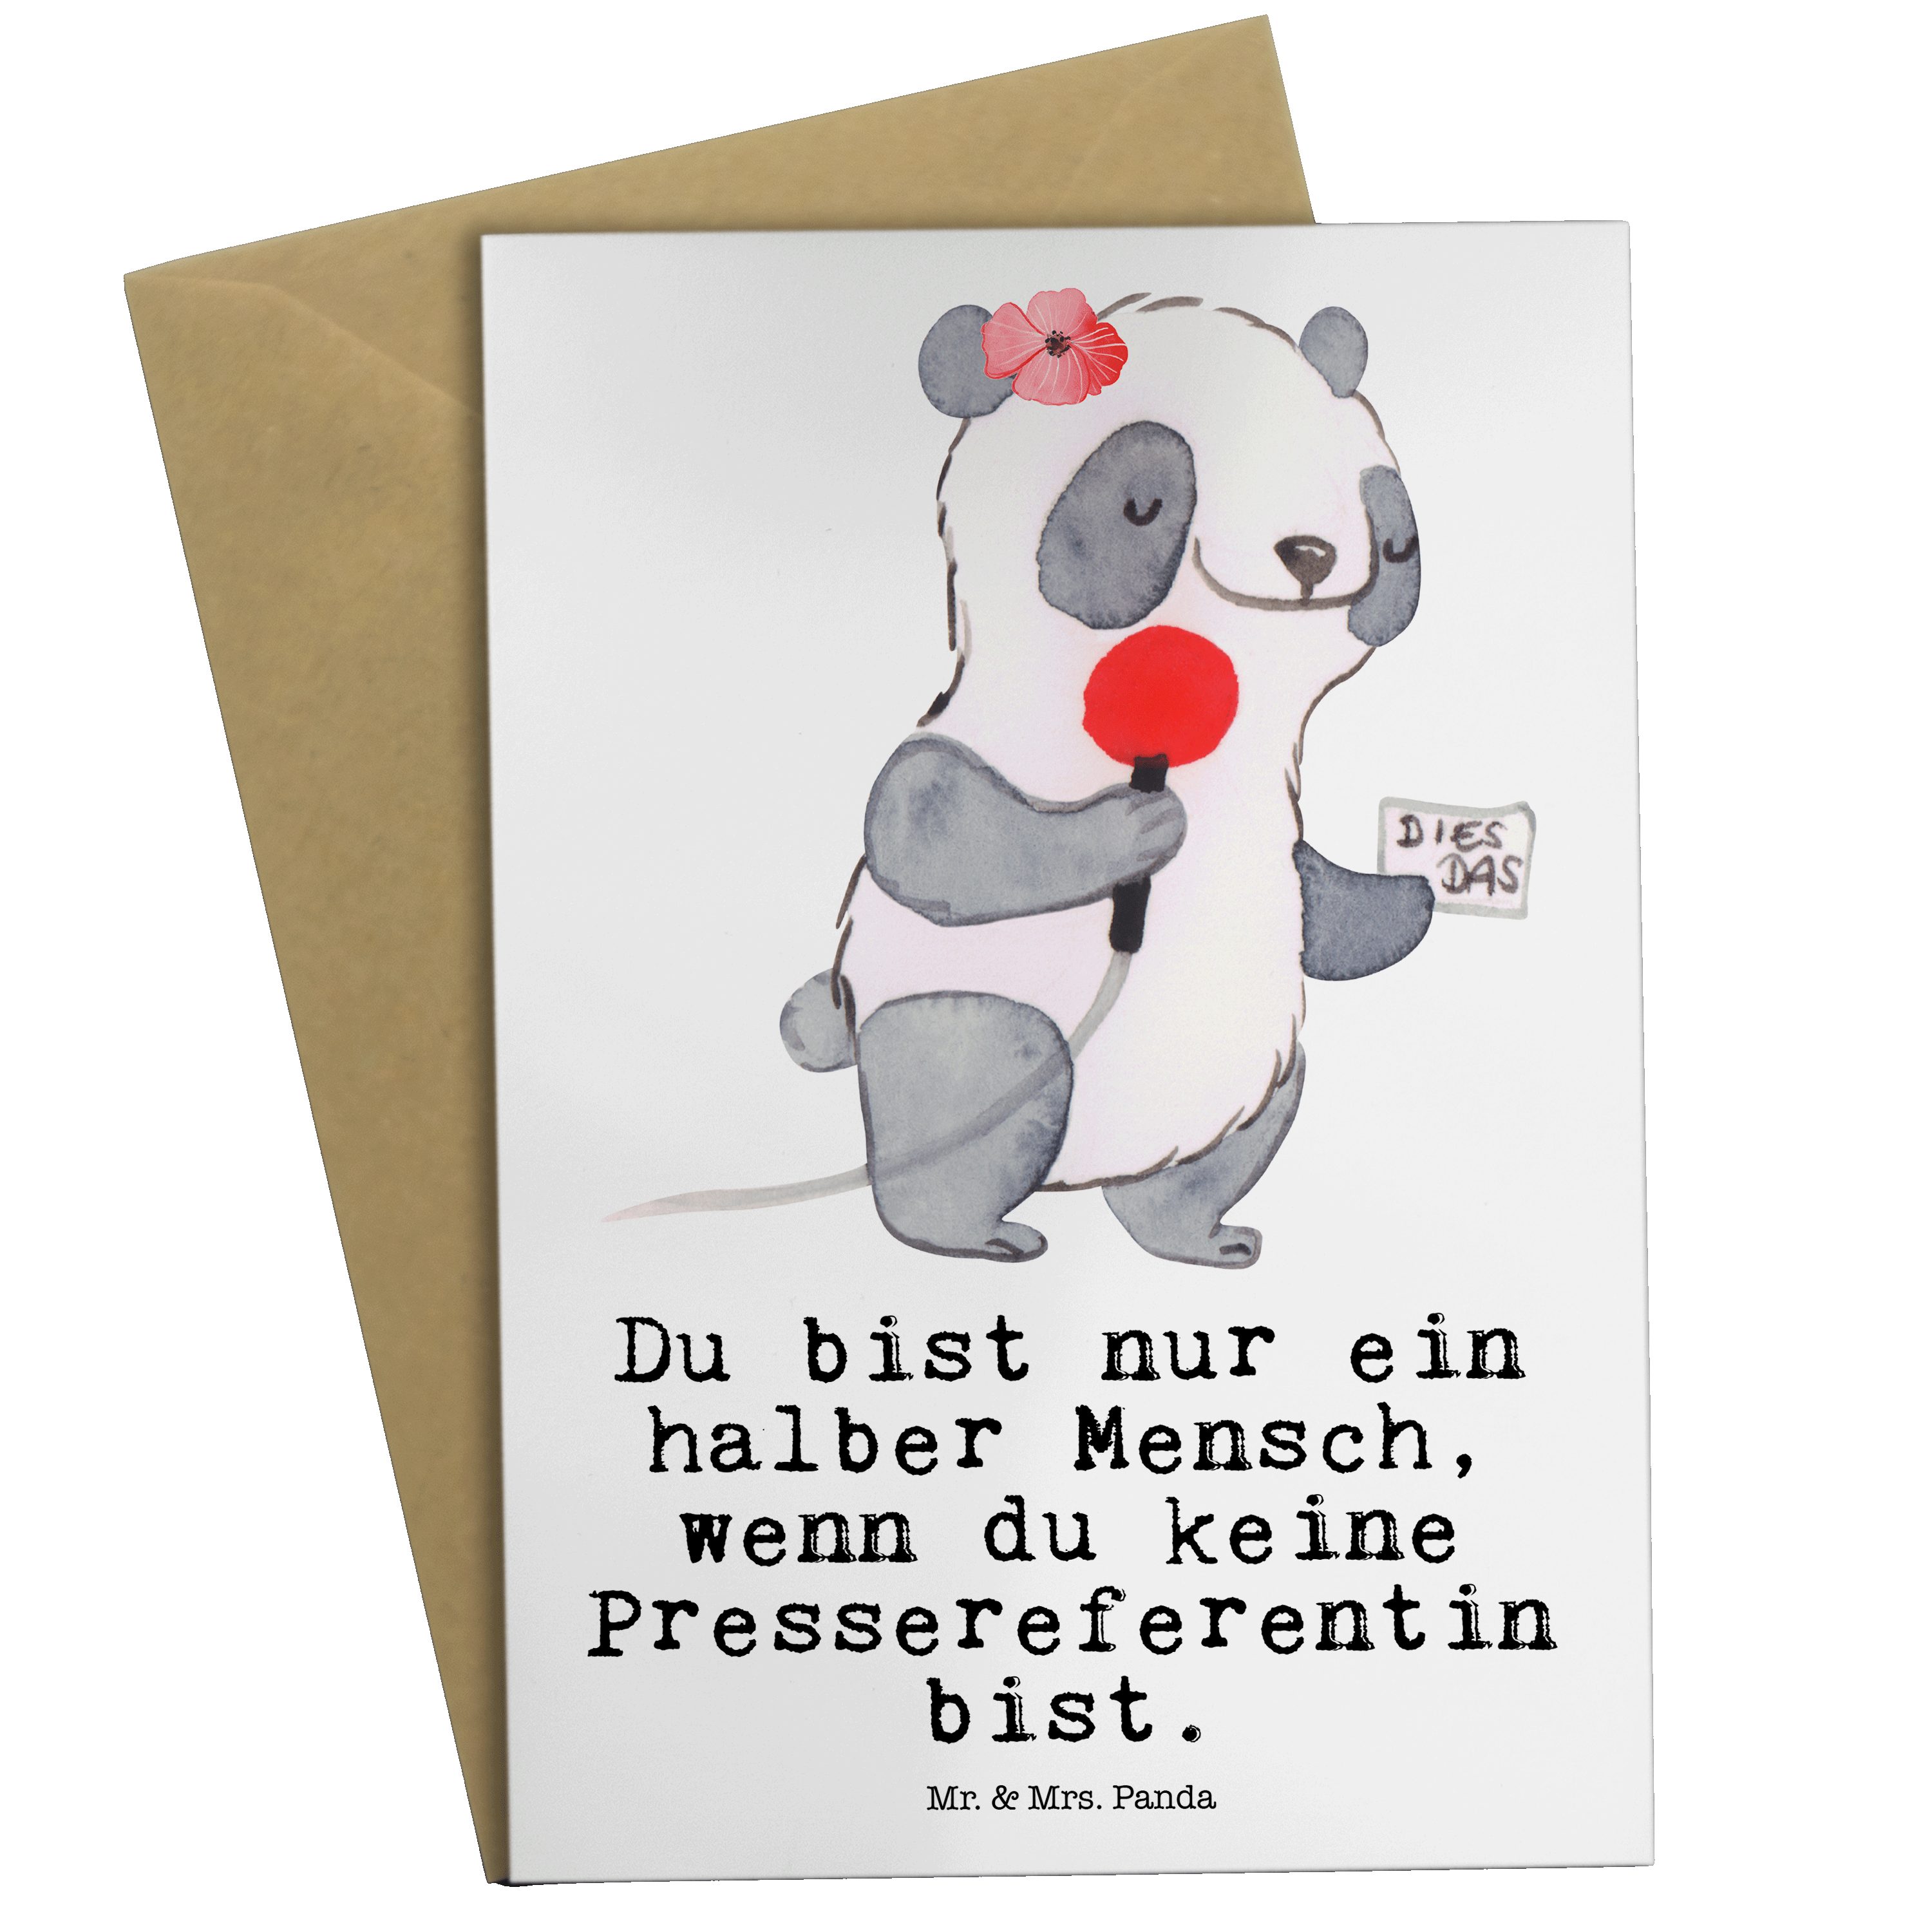 Mr. & Mrs. Panda Grußkarte Pressereferentin mit Herz - Weiß - Geschenk, Presseagentur, Glückwuns